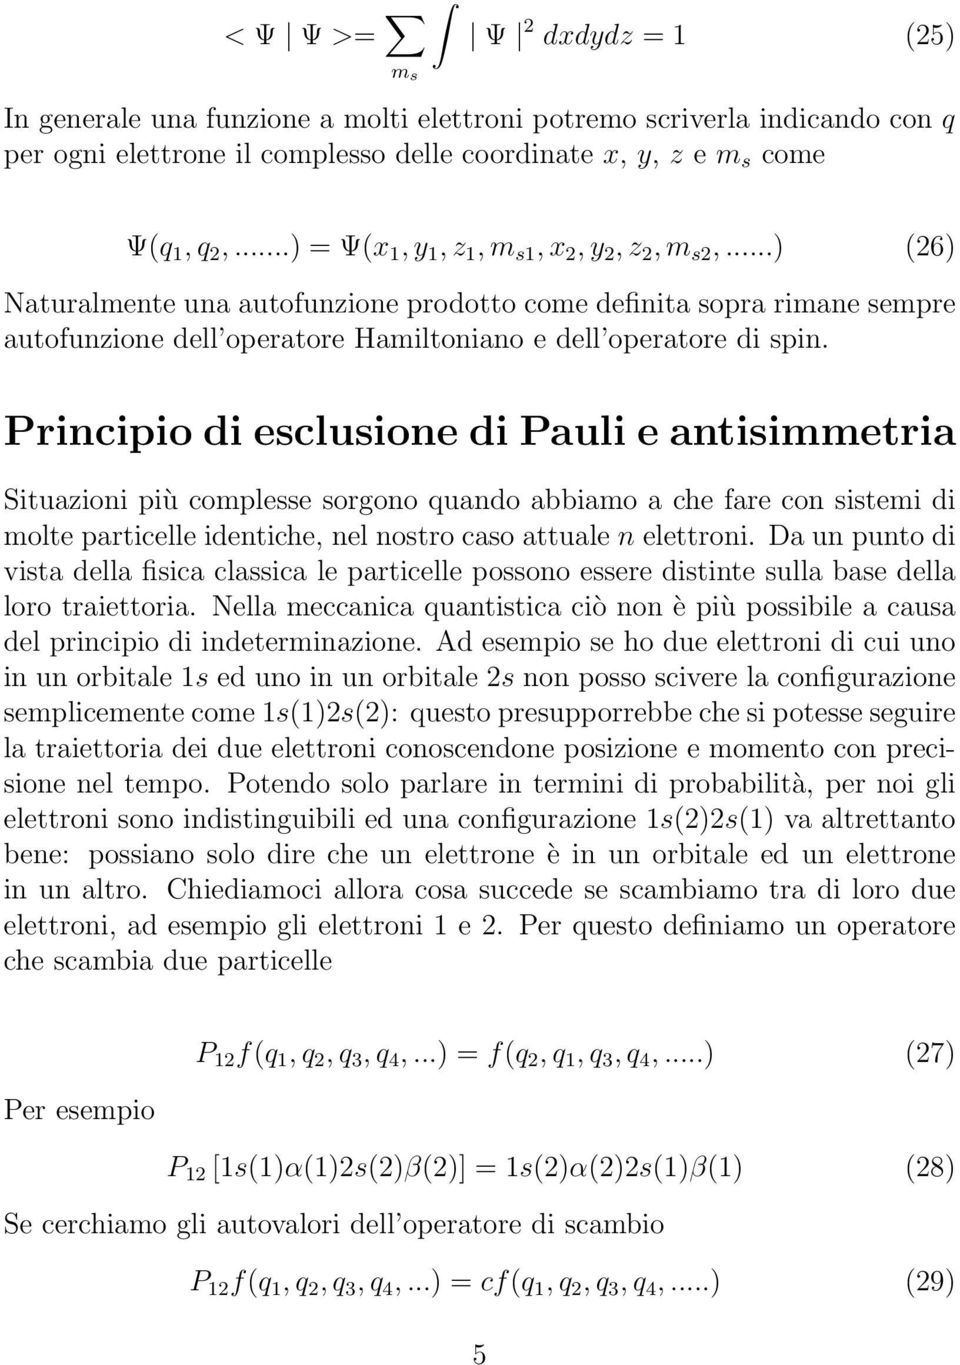 Principio di esclusione di Pauli e antisimmetria Situazioni più complesse sorgono quando abbiamo a che fare con sistemi di molte particelle identiche, nel nostro caso attuale n elettroni.